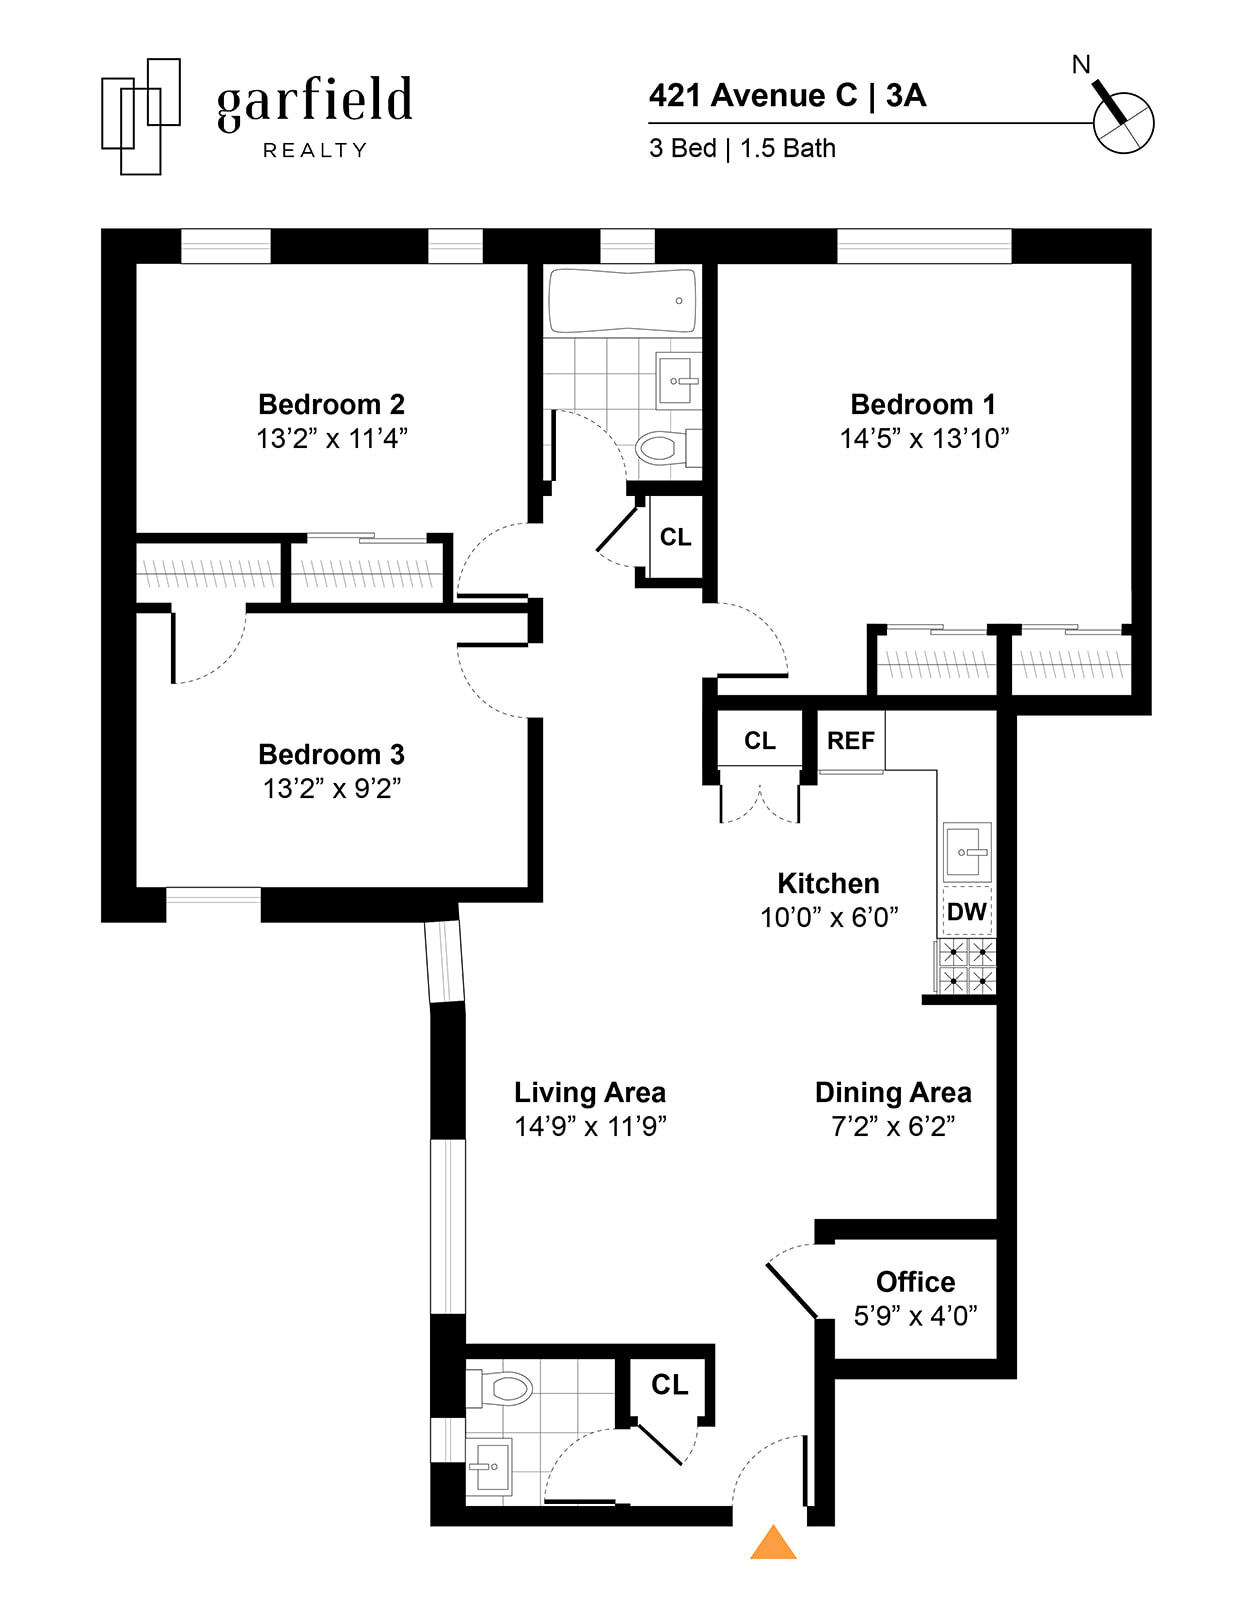 Floorplan of 421 Ave C